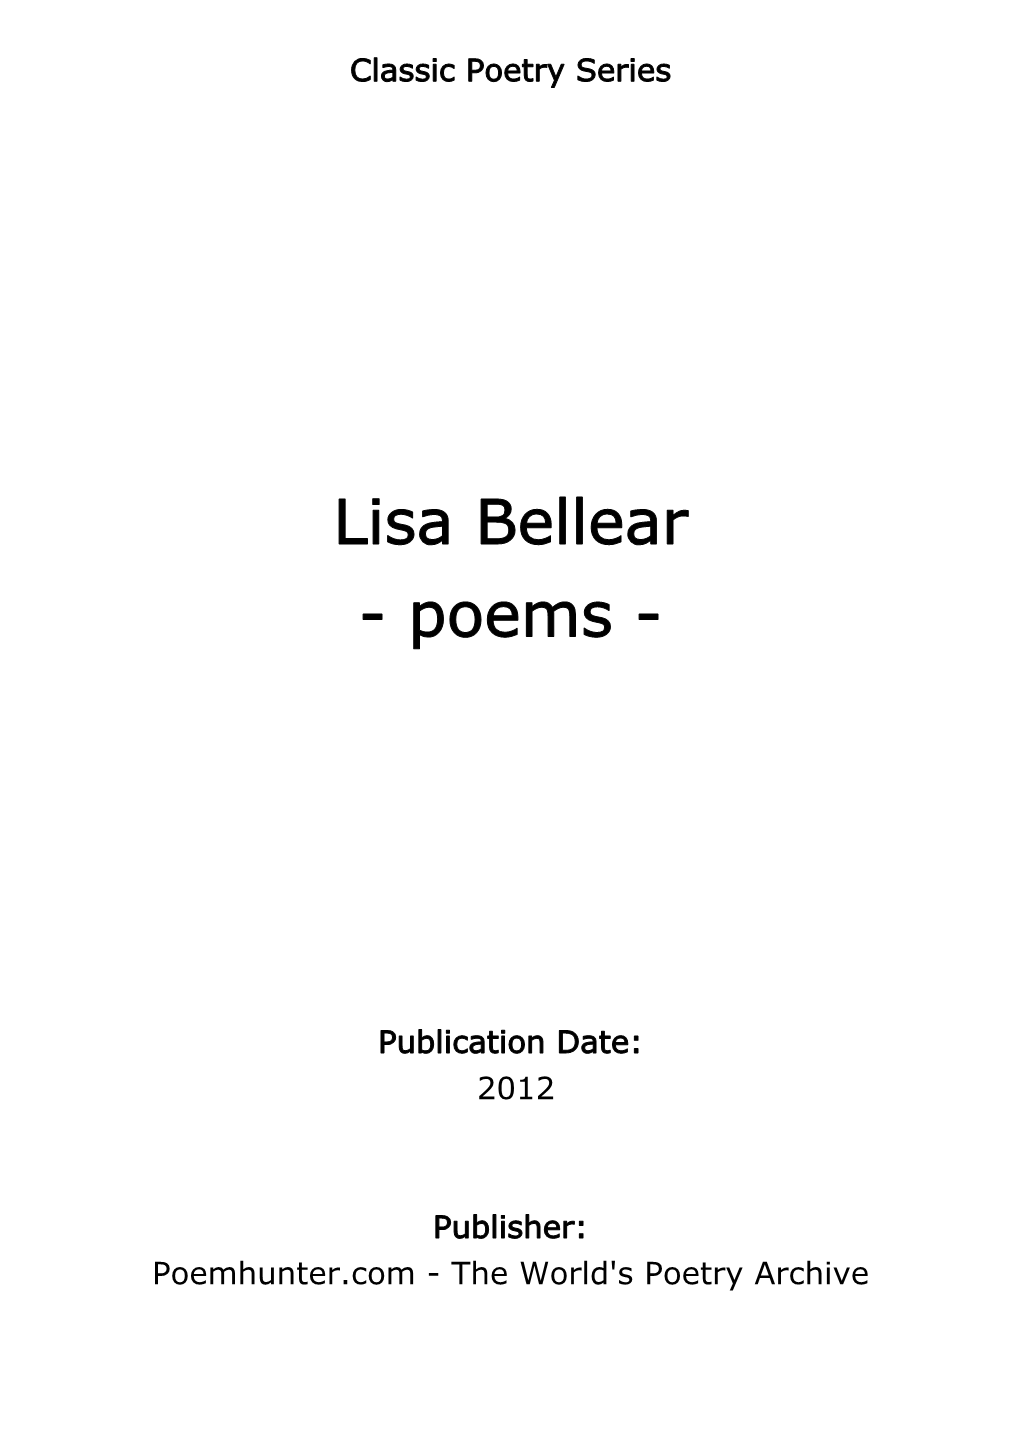 Lisa Bellear - Poems